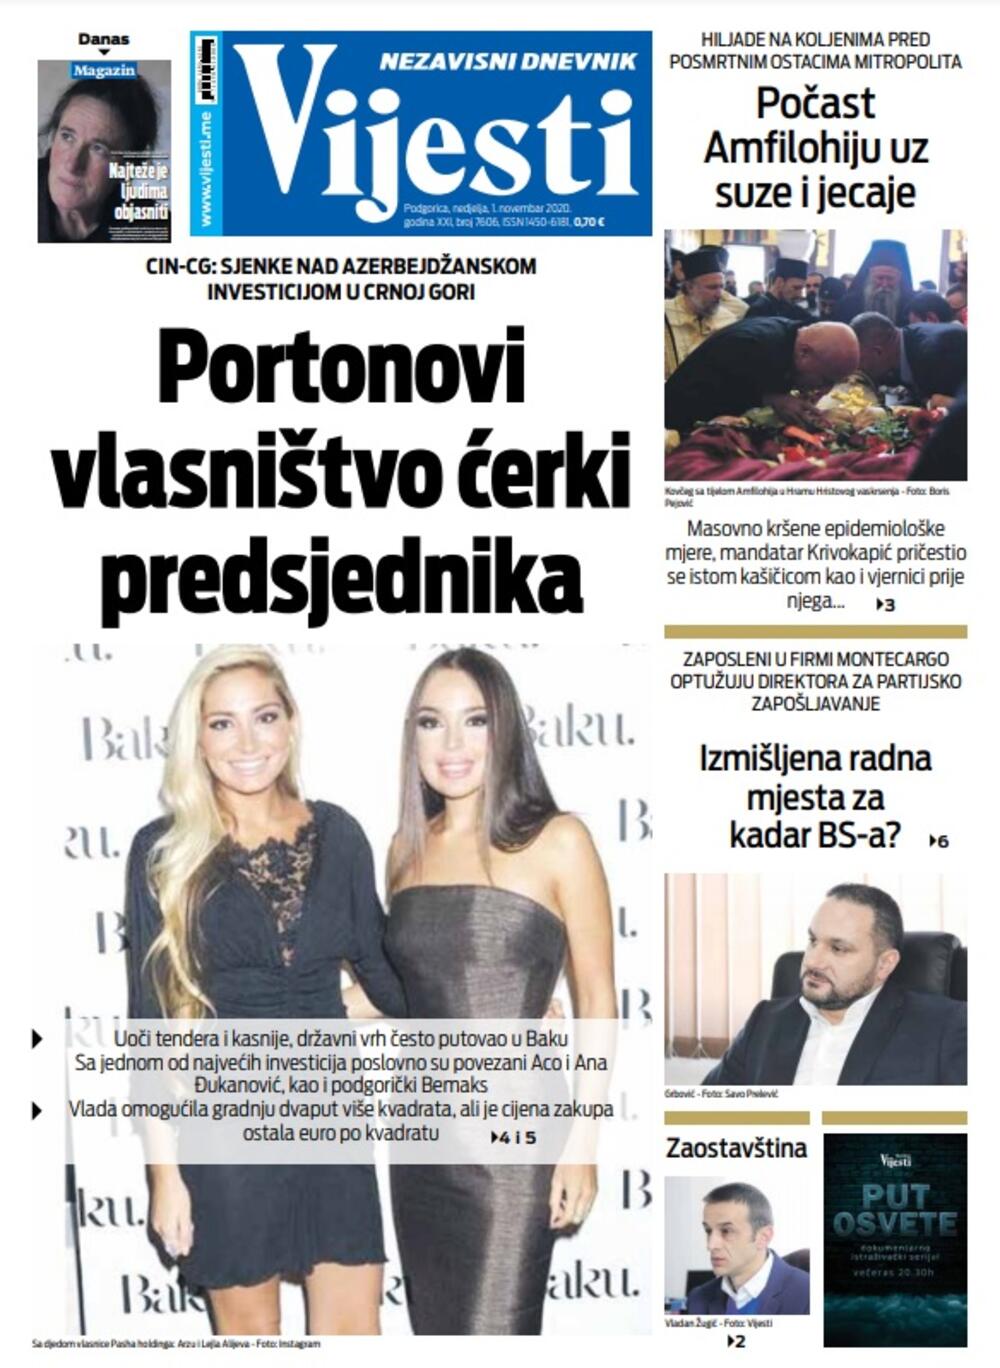 Naslovna strana "Vijesti" za nedjelju 1. novembar 2020. godine, Foto: Vijesti